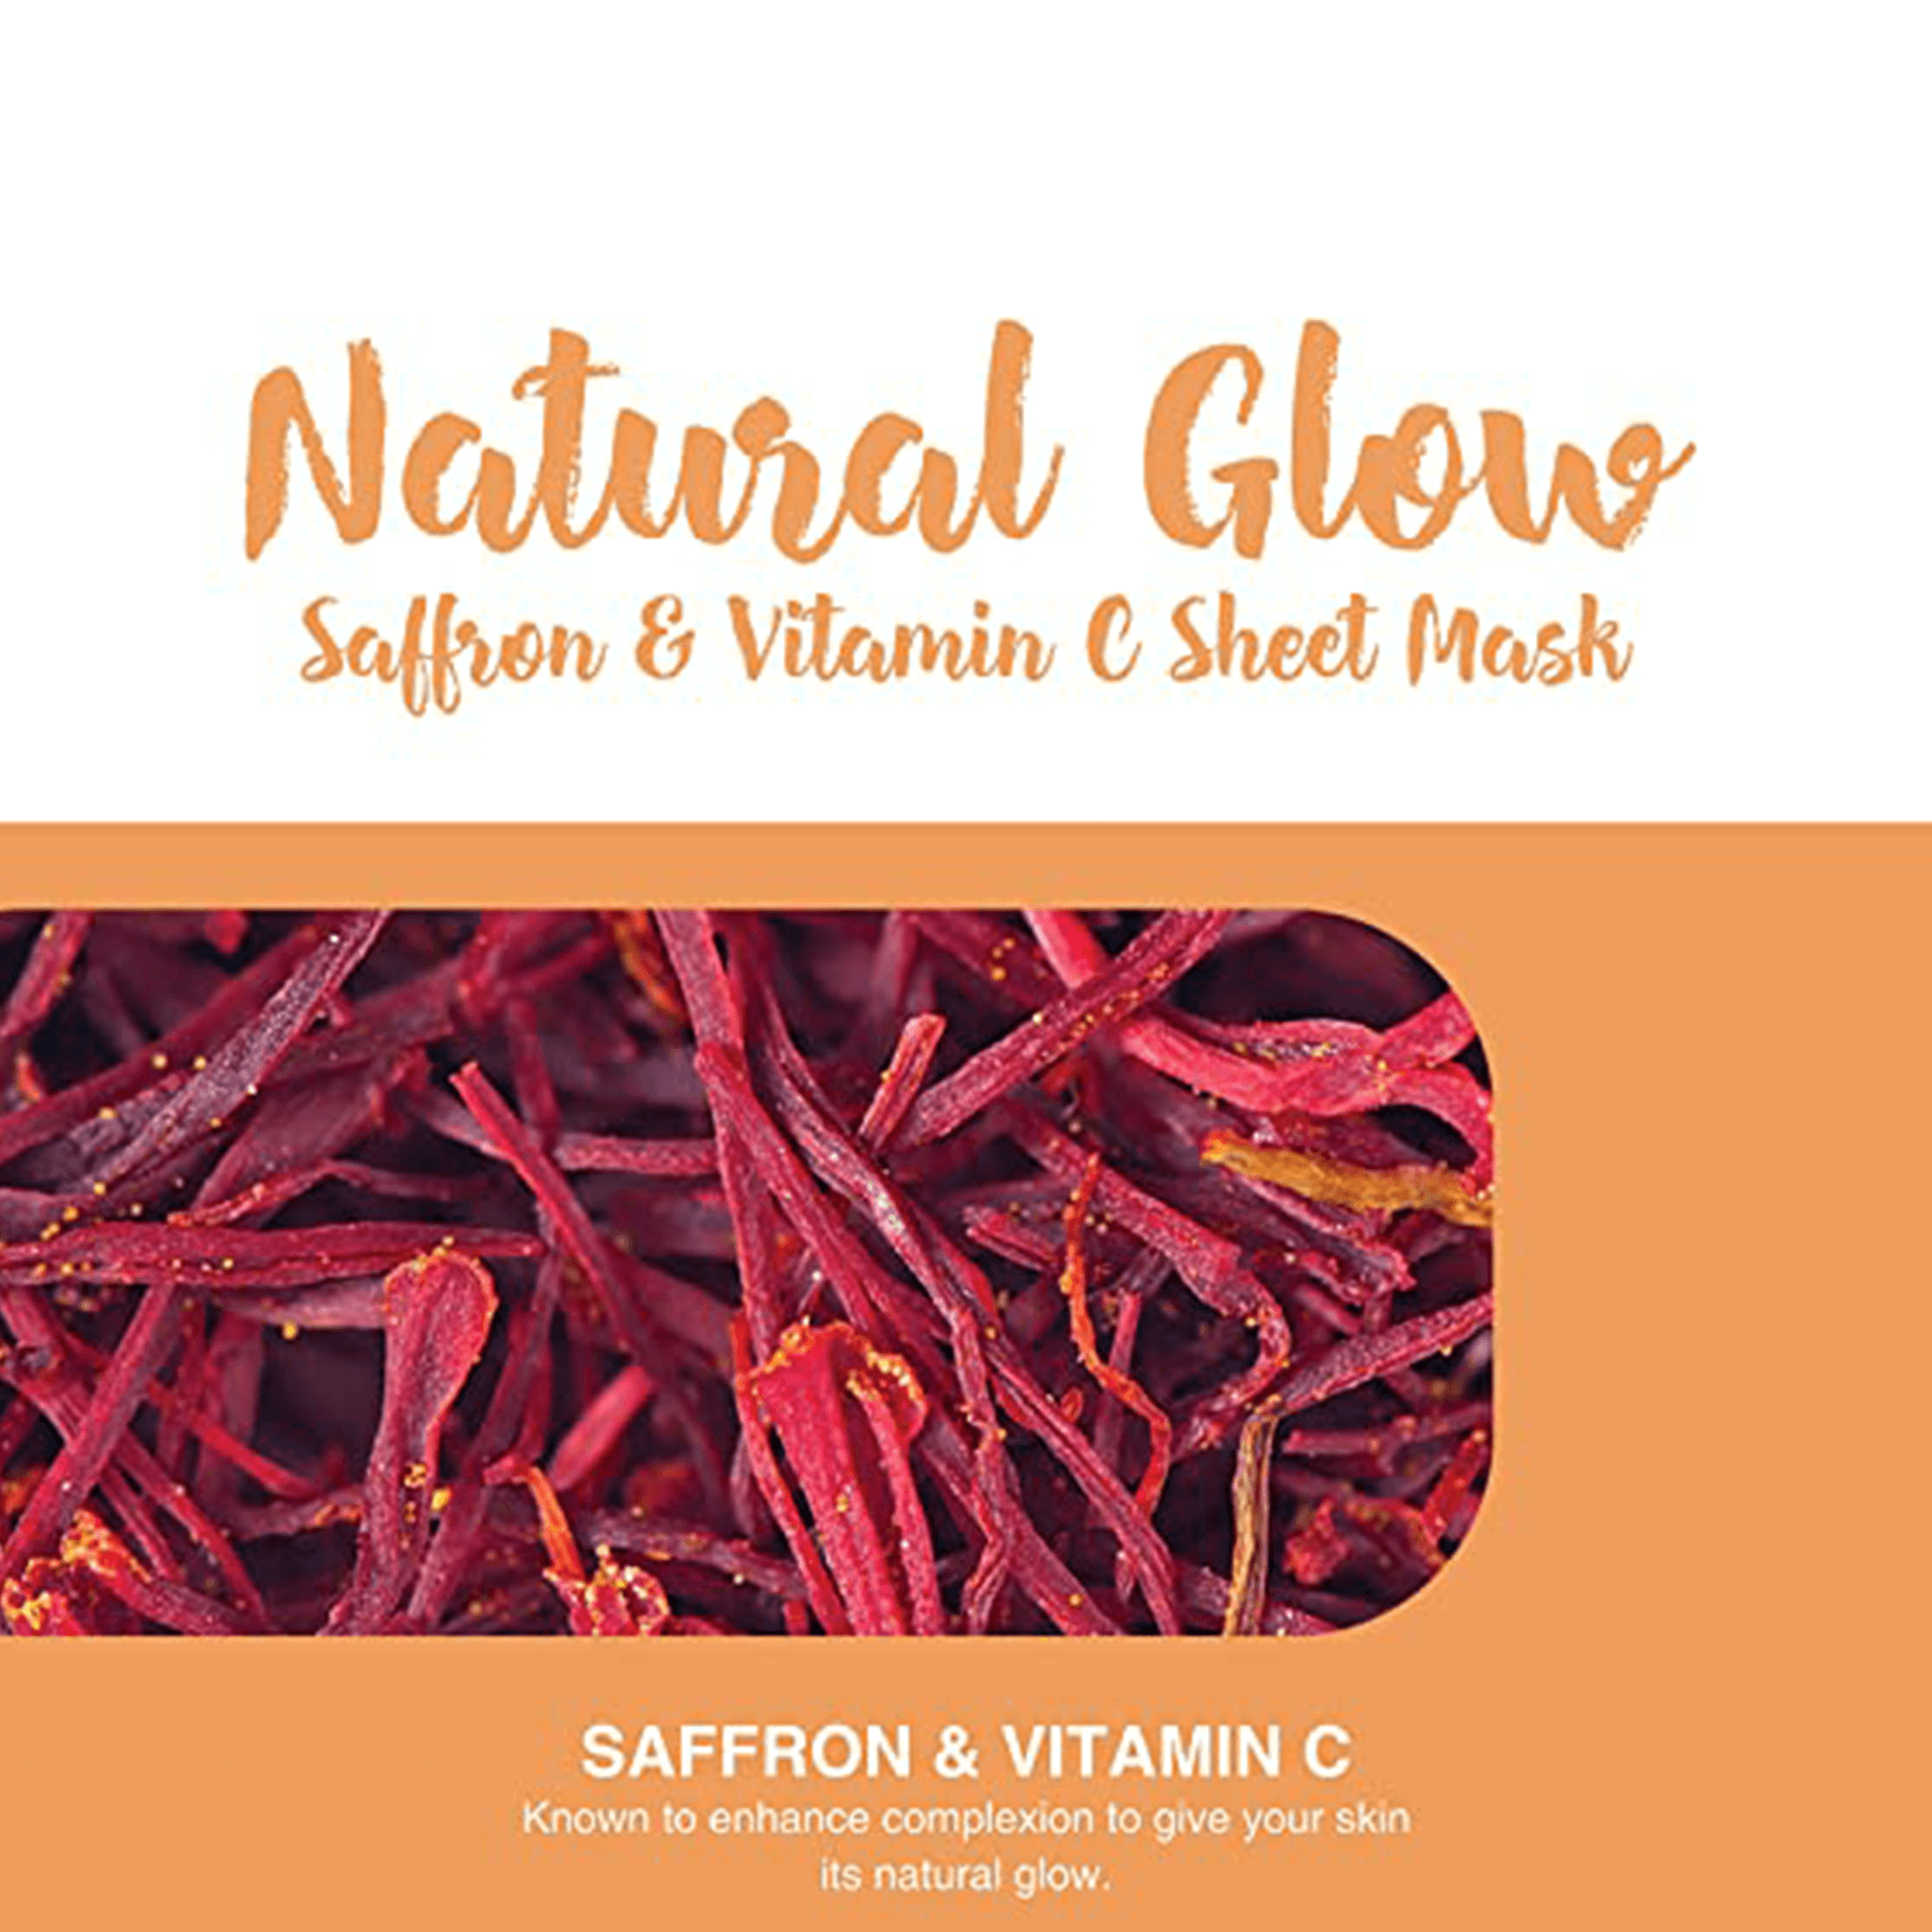 Natural Glow Saffron & Vitamin C Sheet Mask Key Ingredients